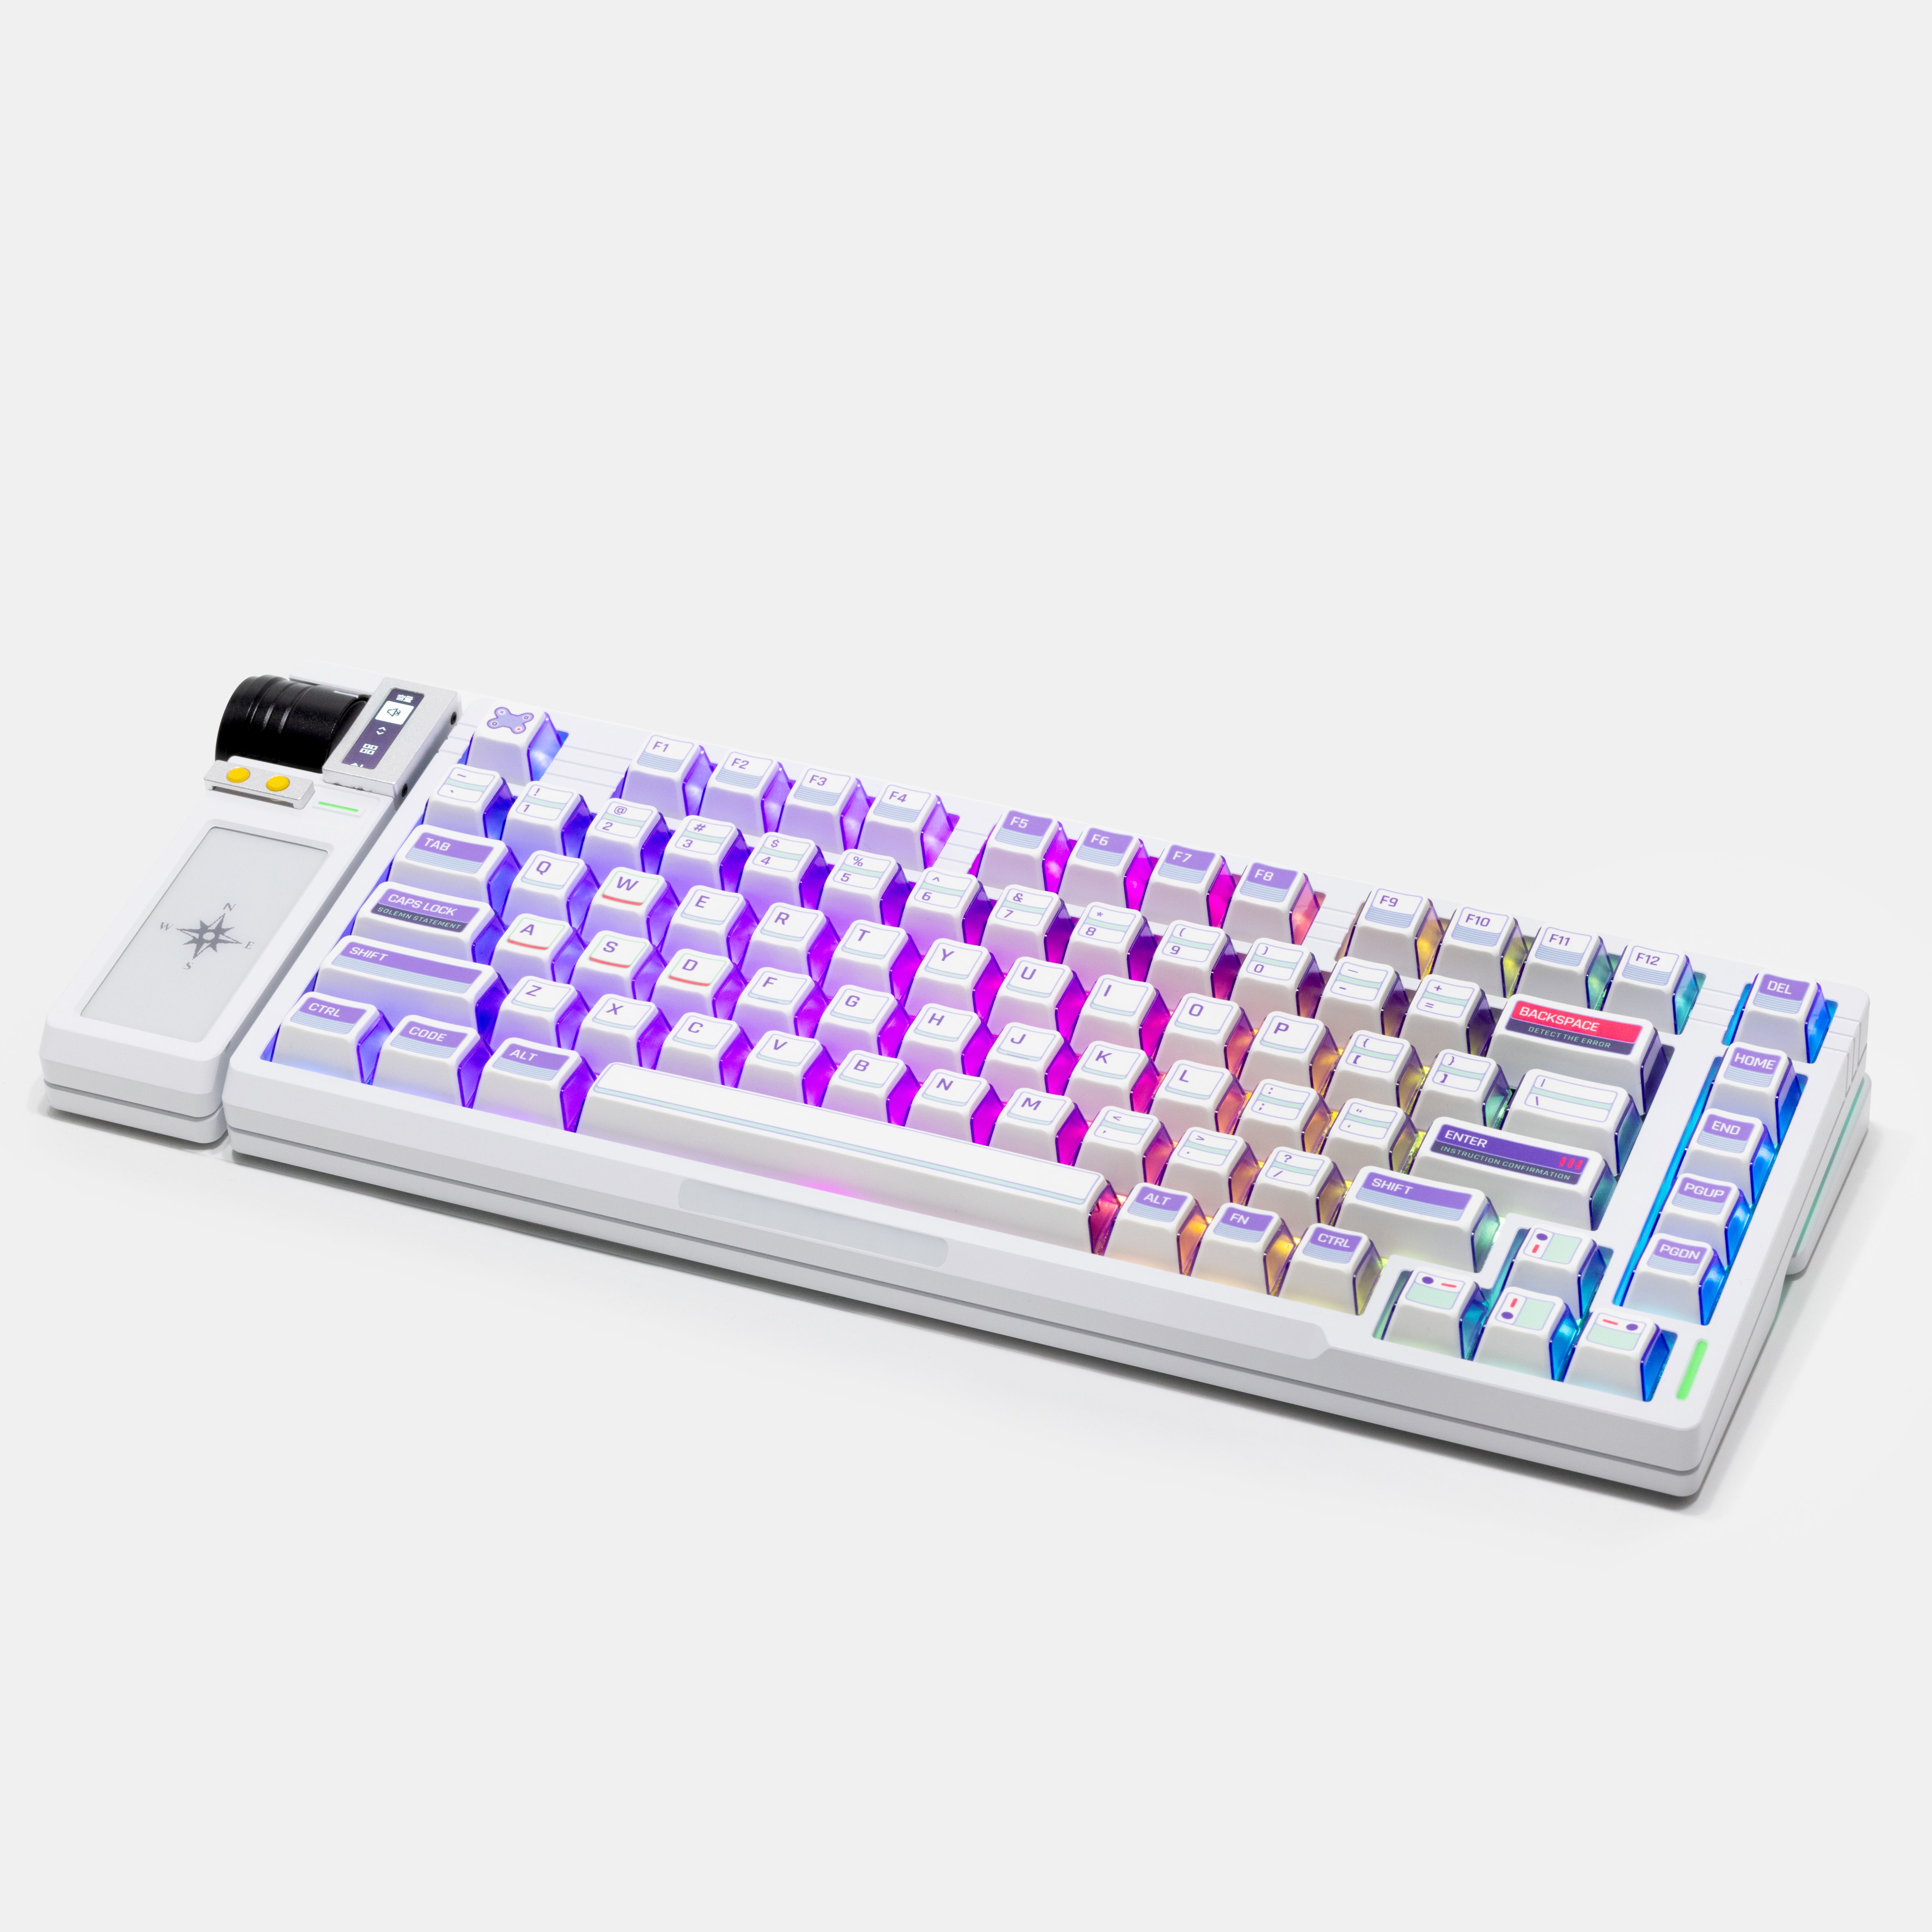 [IC] HW75 Keyboard